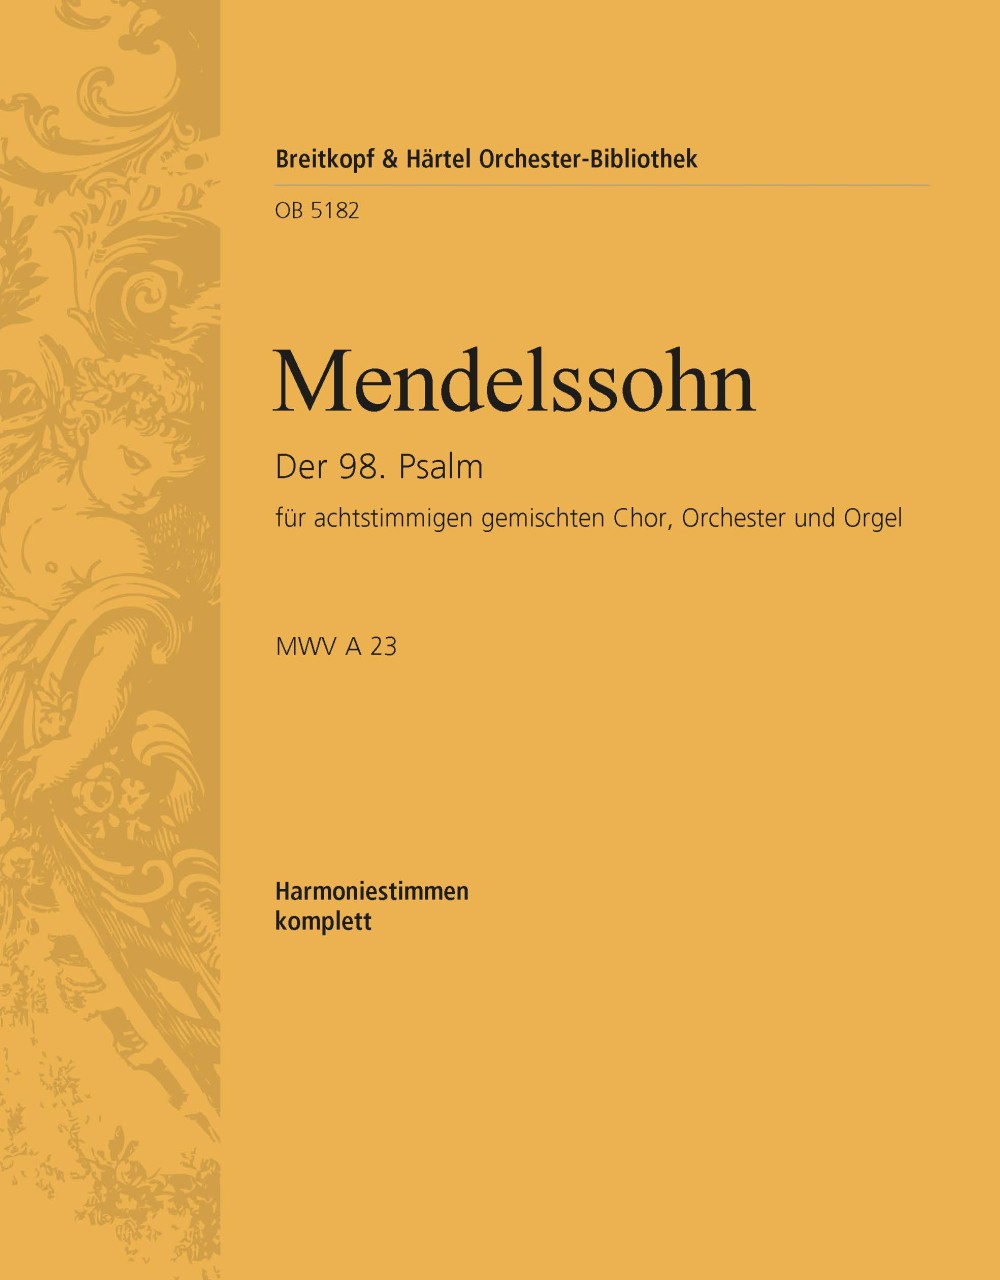 Der 98. Psalm Op. 91 (MENDELSSOHN-BARTHOLDY FELIX)